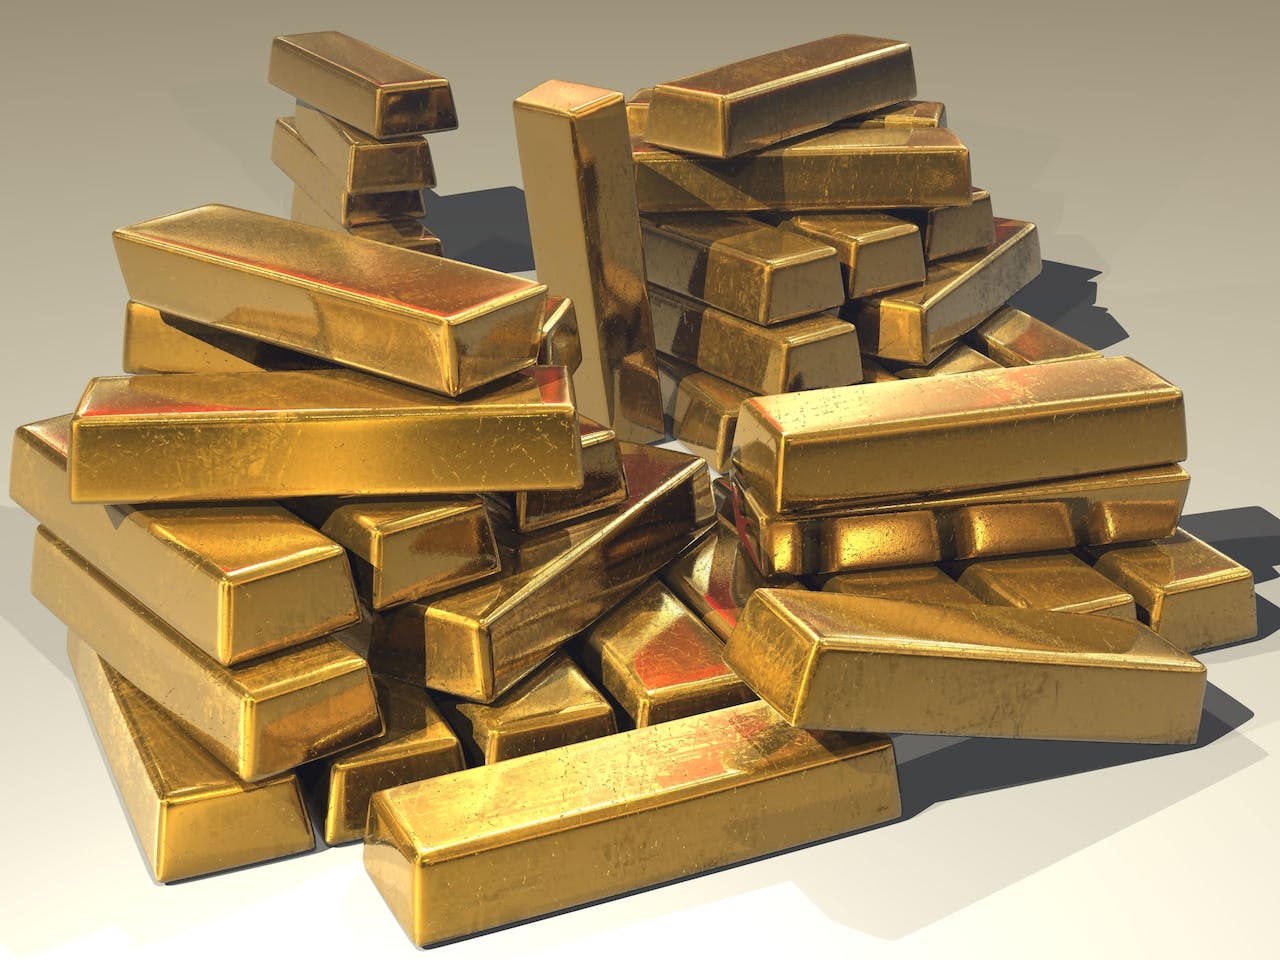 Hoe kun je slim en haalbaar investeren in goud?